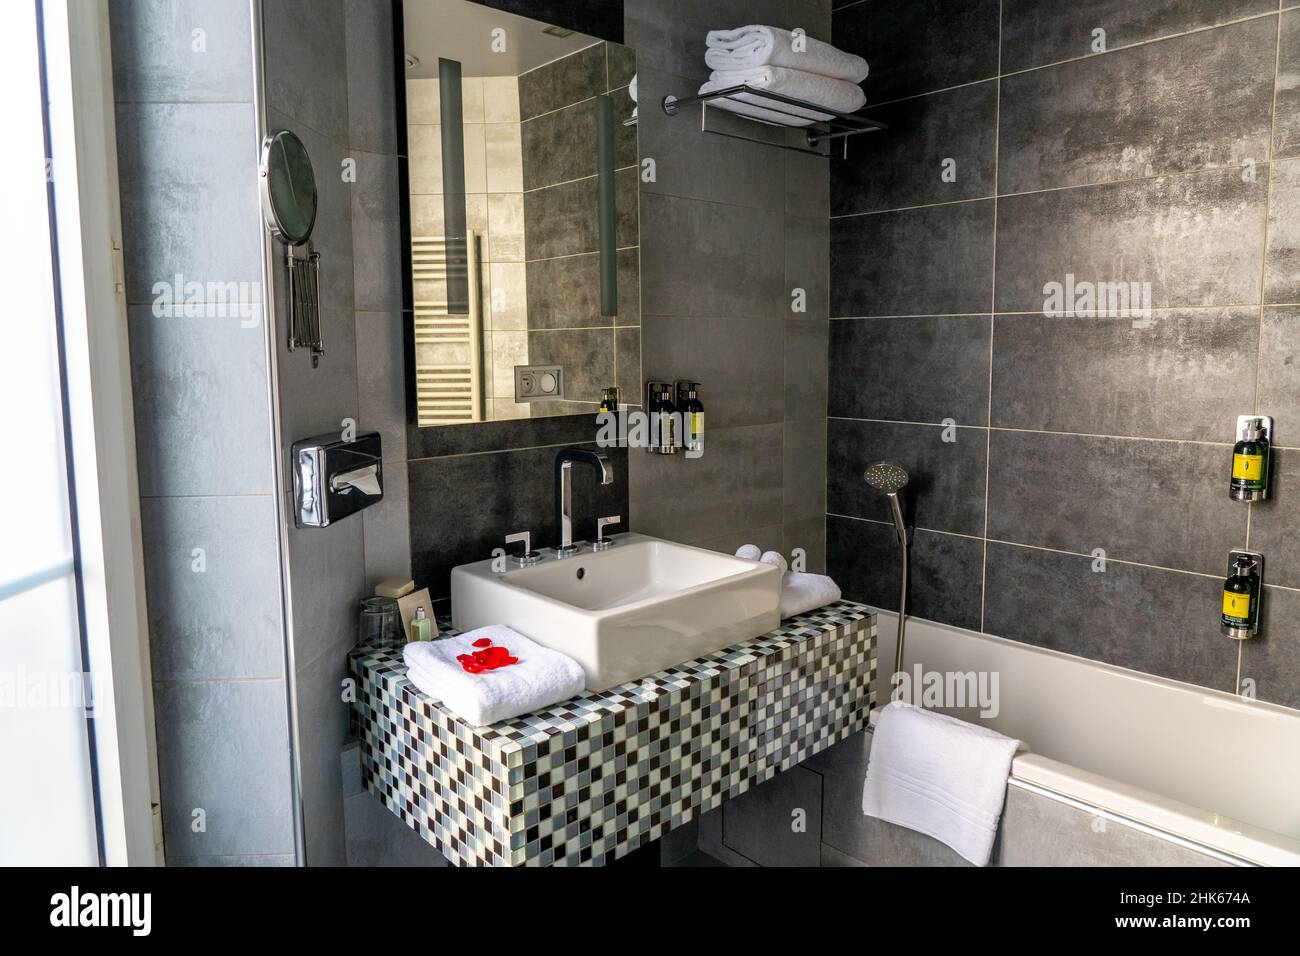 Paris, FRANCE - 11.11.2021 - salle de bain luxueuse avec douche et  décoration en pierre noire et blanche.Lavabo blanc, toilettes et  mobilier.Gros plan du produit d'hygiène de l'hôtel sur un comptoir de